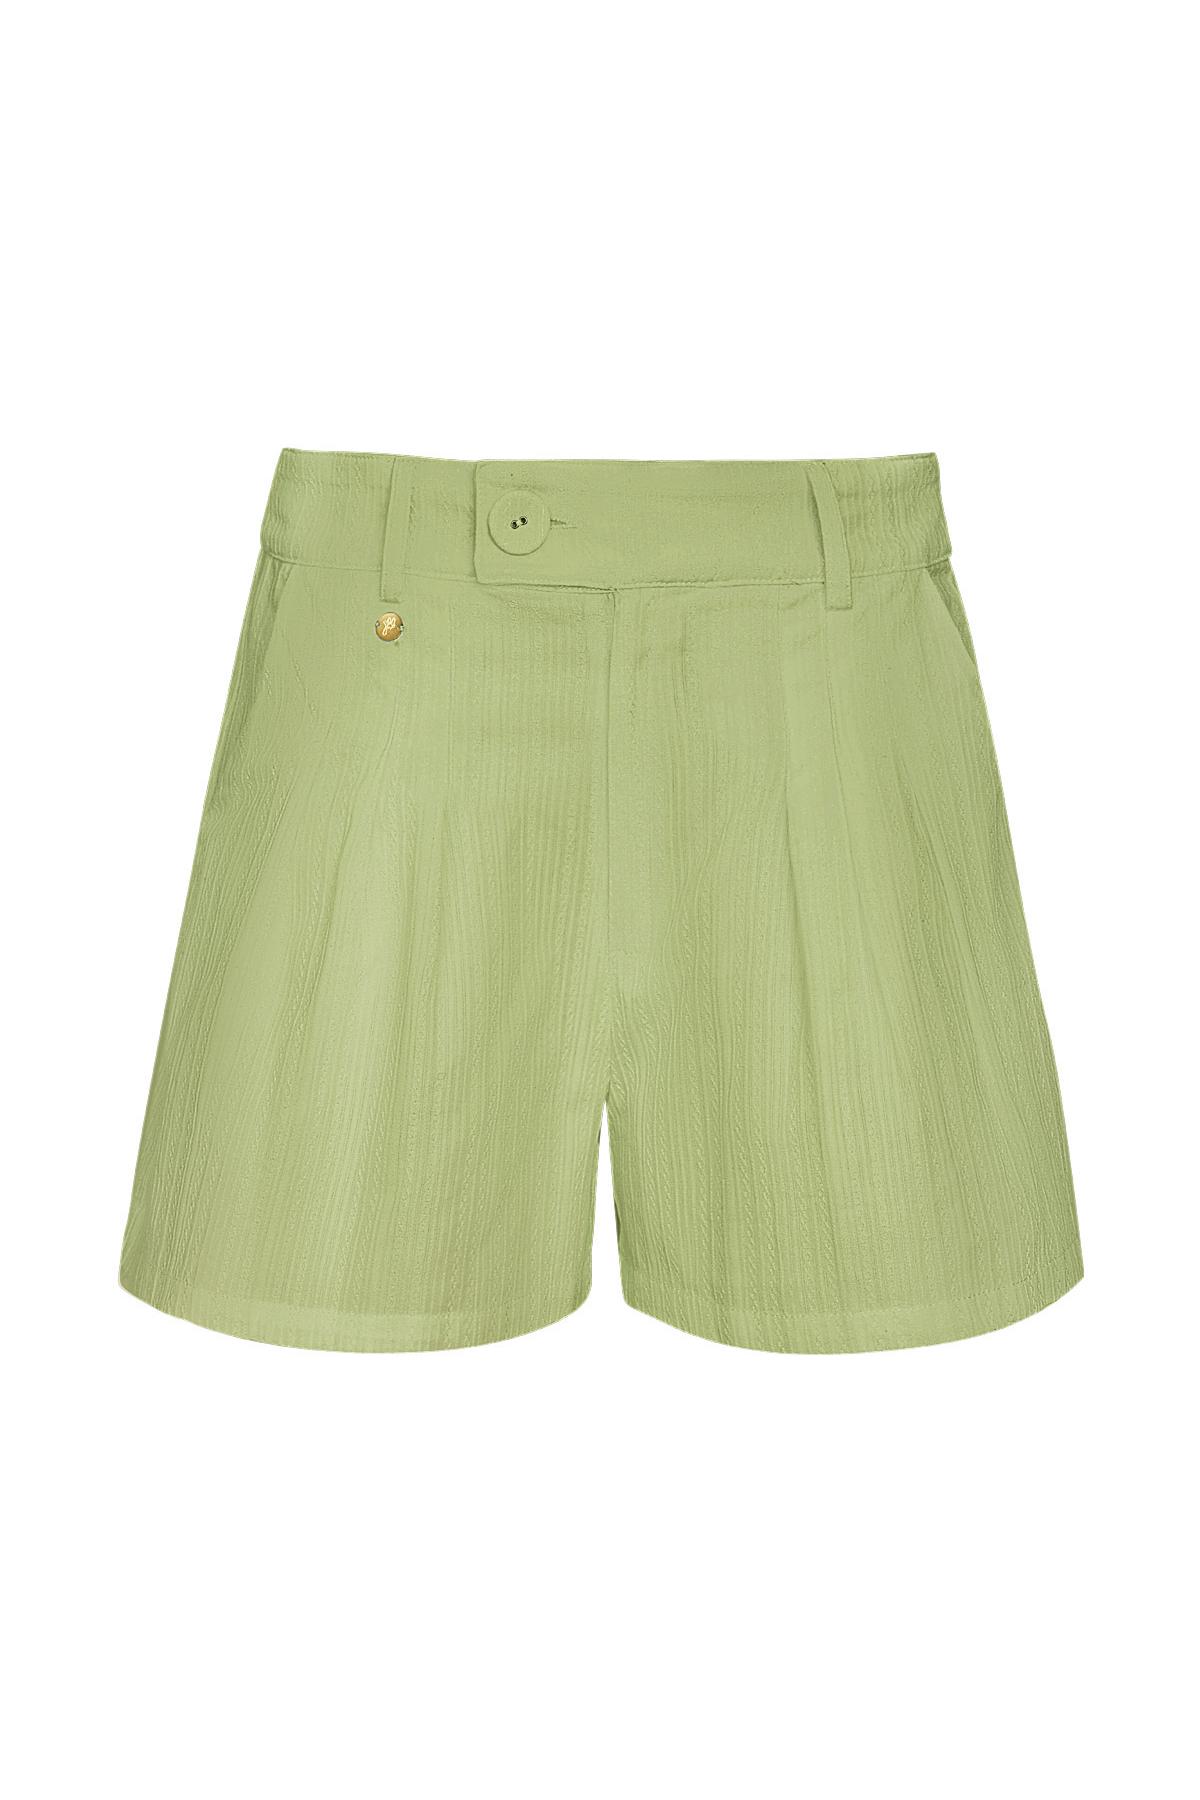 Shorts mit Knopfdetail - grün M h5 